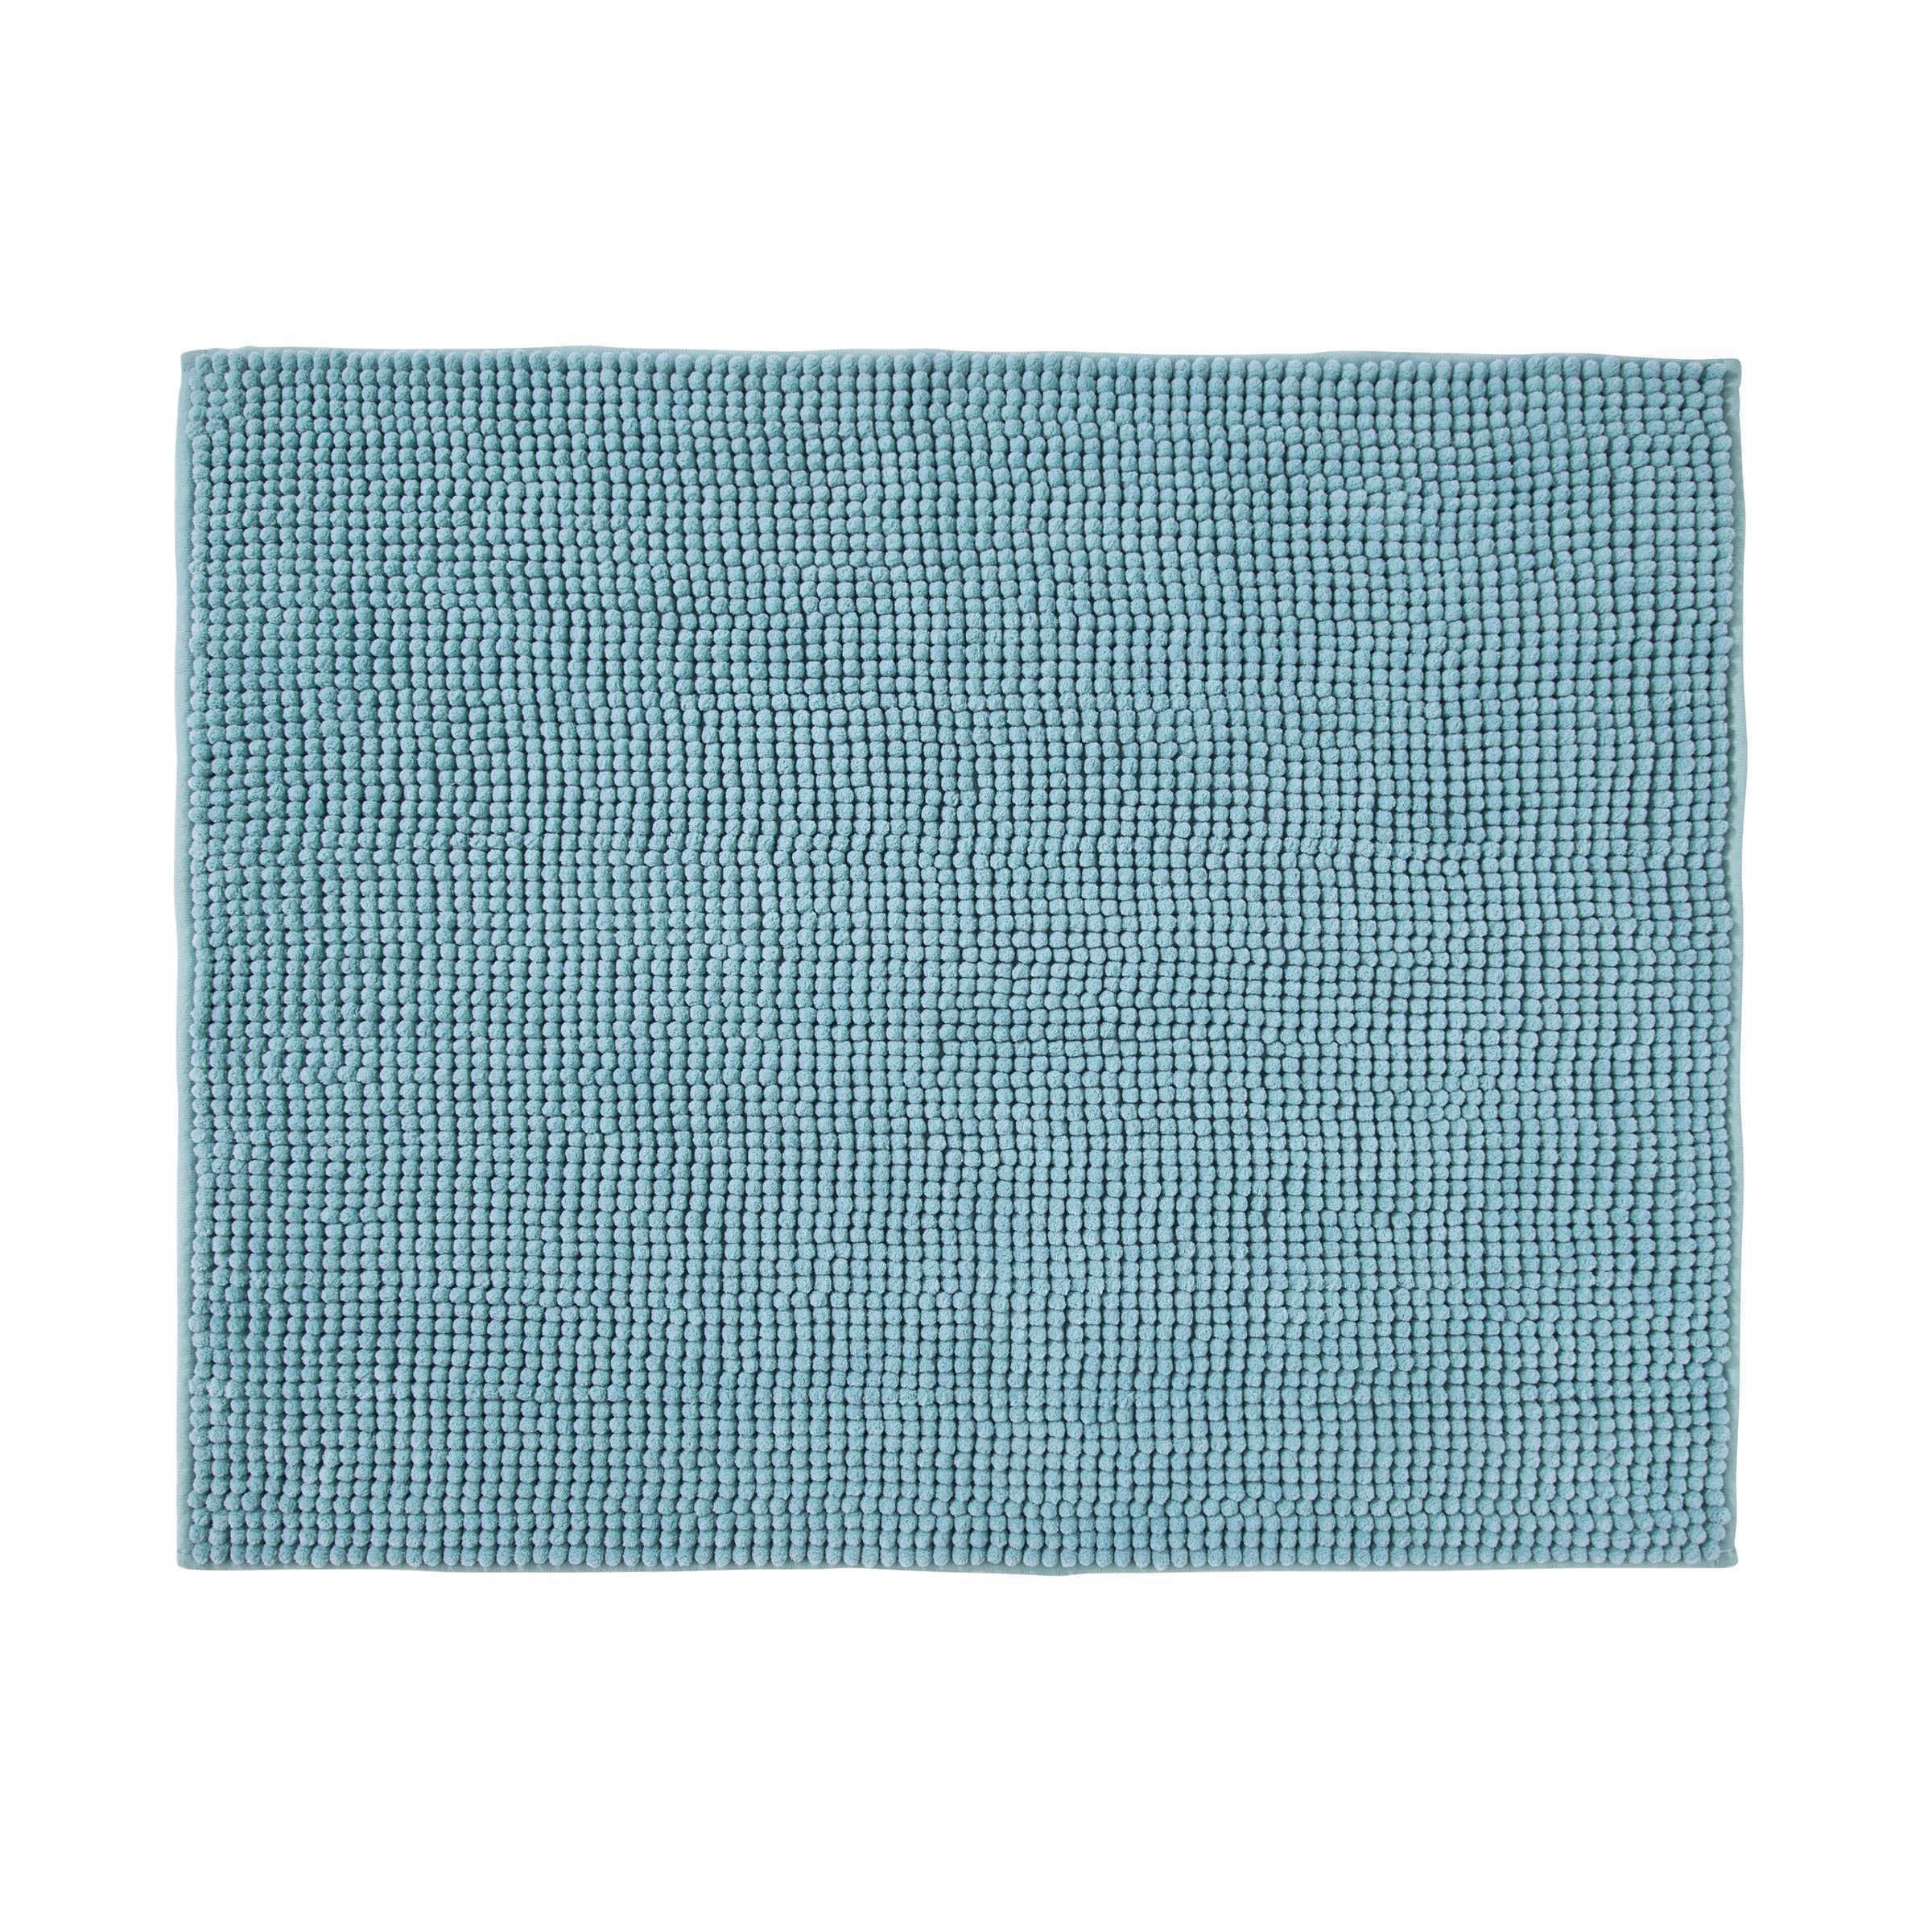 Badematte POPEYE Badematte Polyester, Flor: Hellblau 80x60cm 100% 100% Polyester-Mikrofaser, Rückseite: Grundgewebe: BUTLERS, Sprühlatex